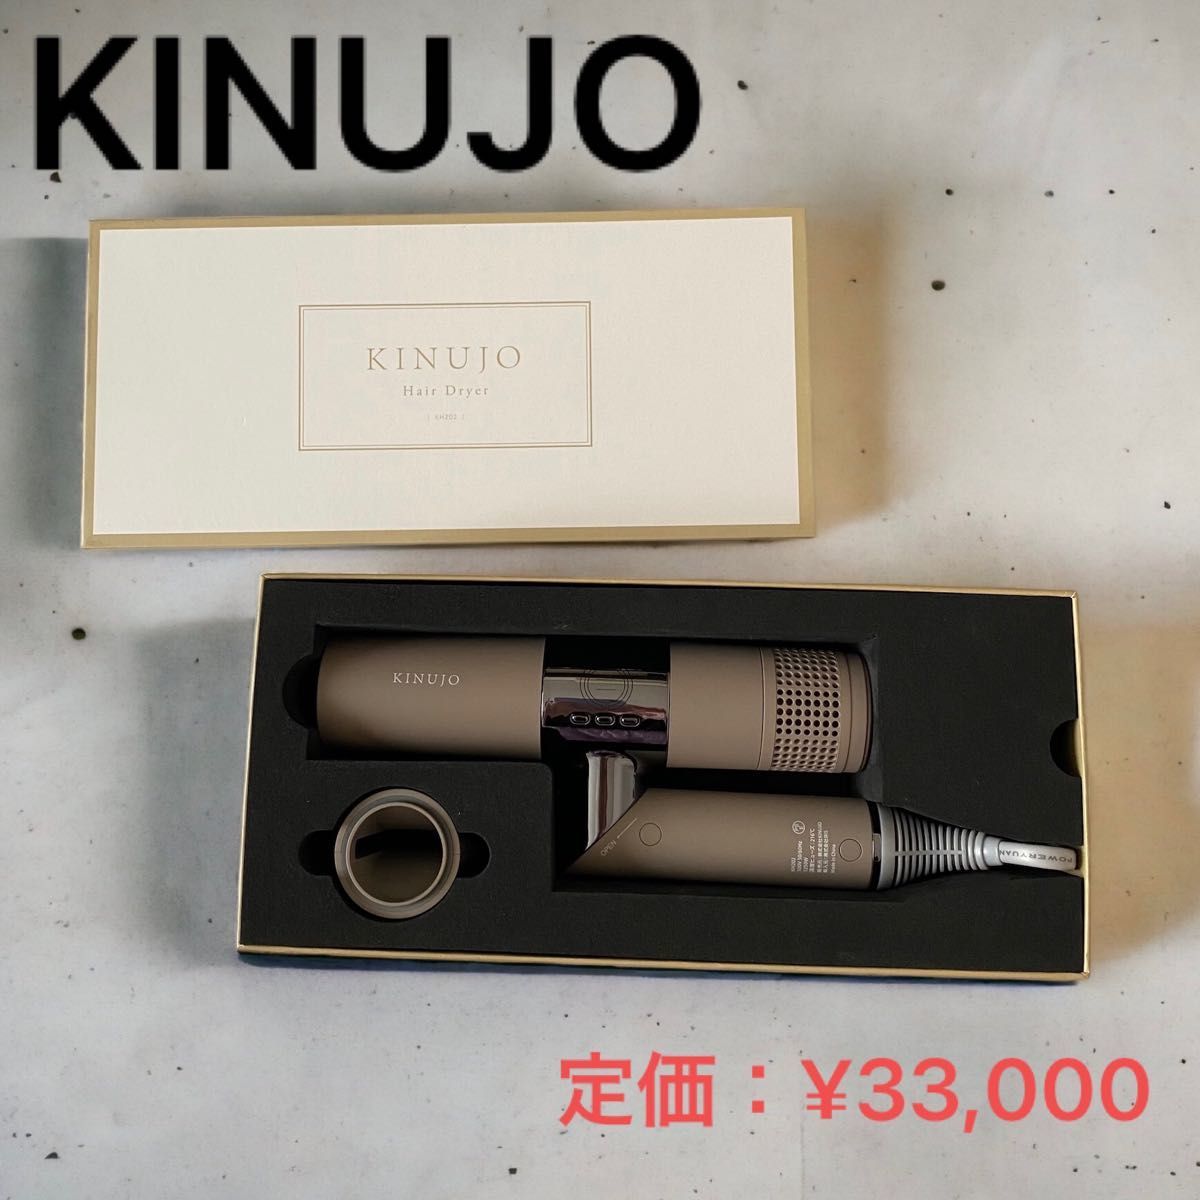 未使用級 KINUJO ヘアドライヤー KINUJO KH202 BROWN 絹女 hair dryer